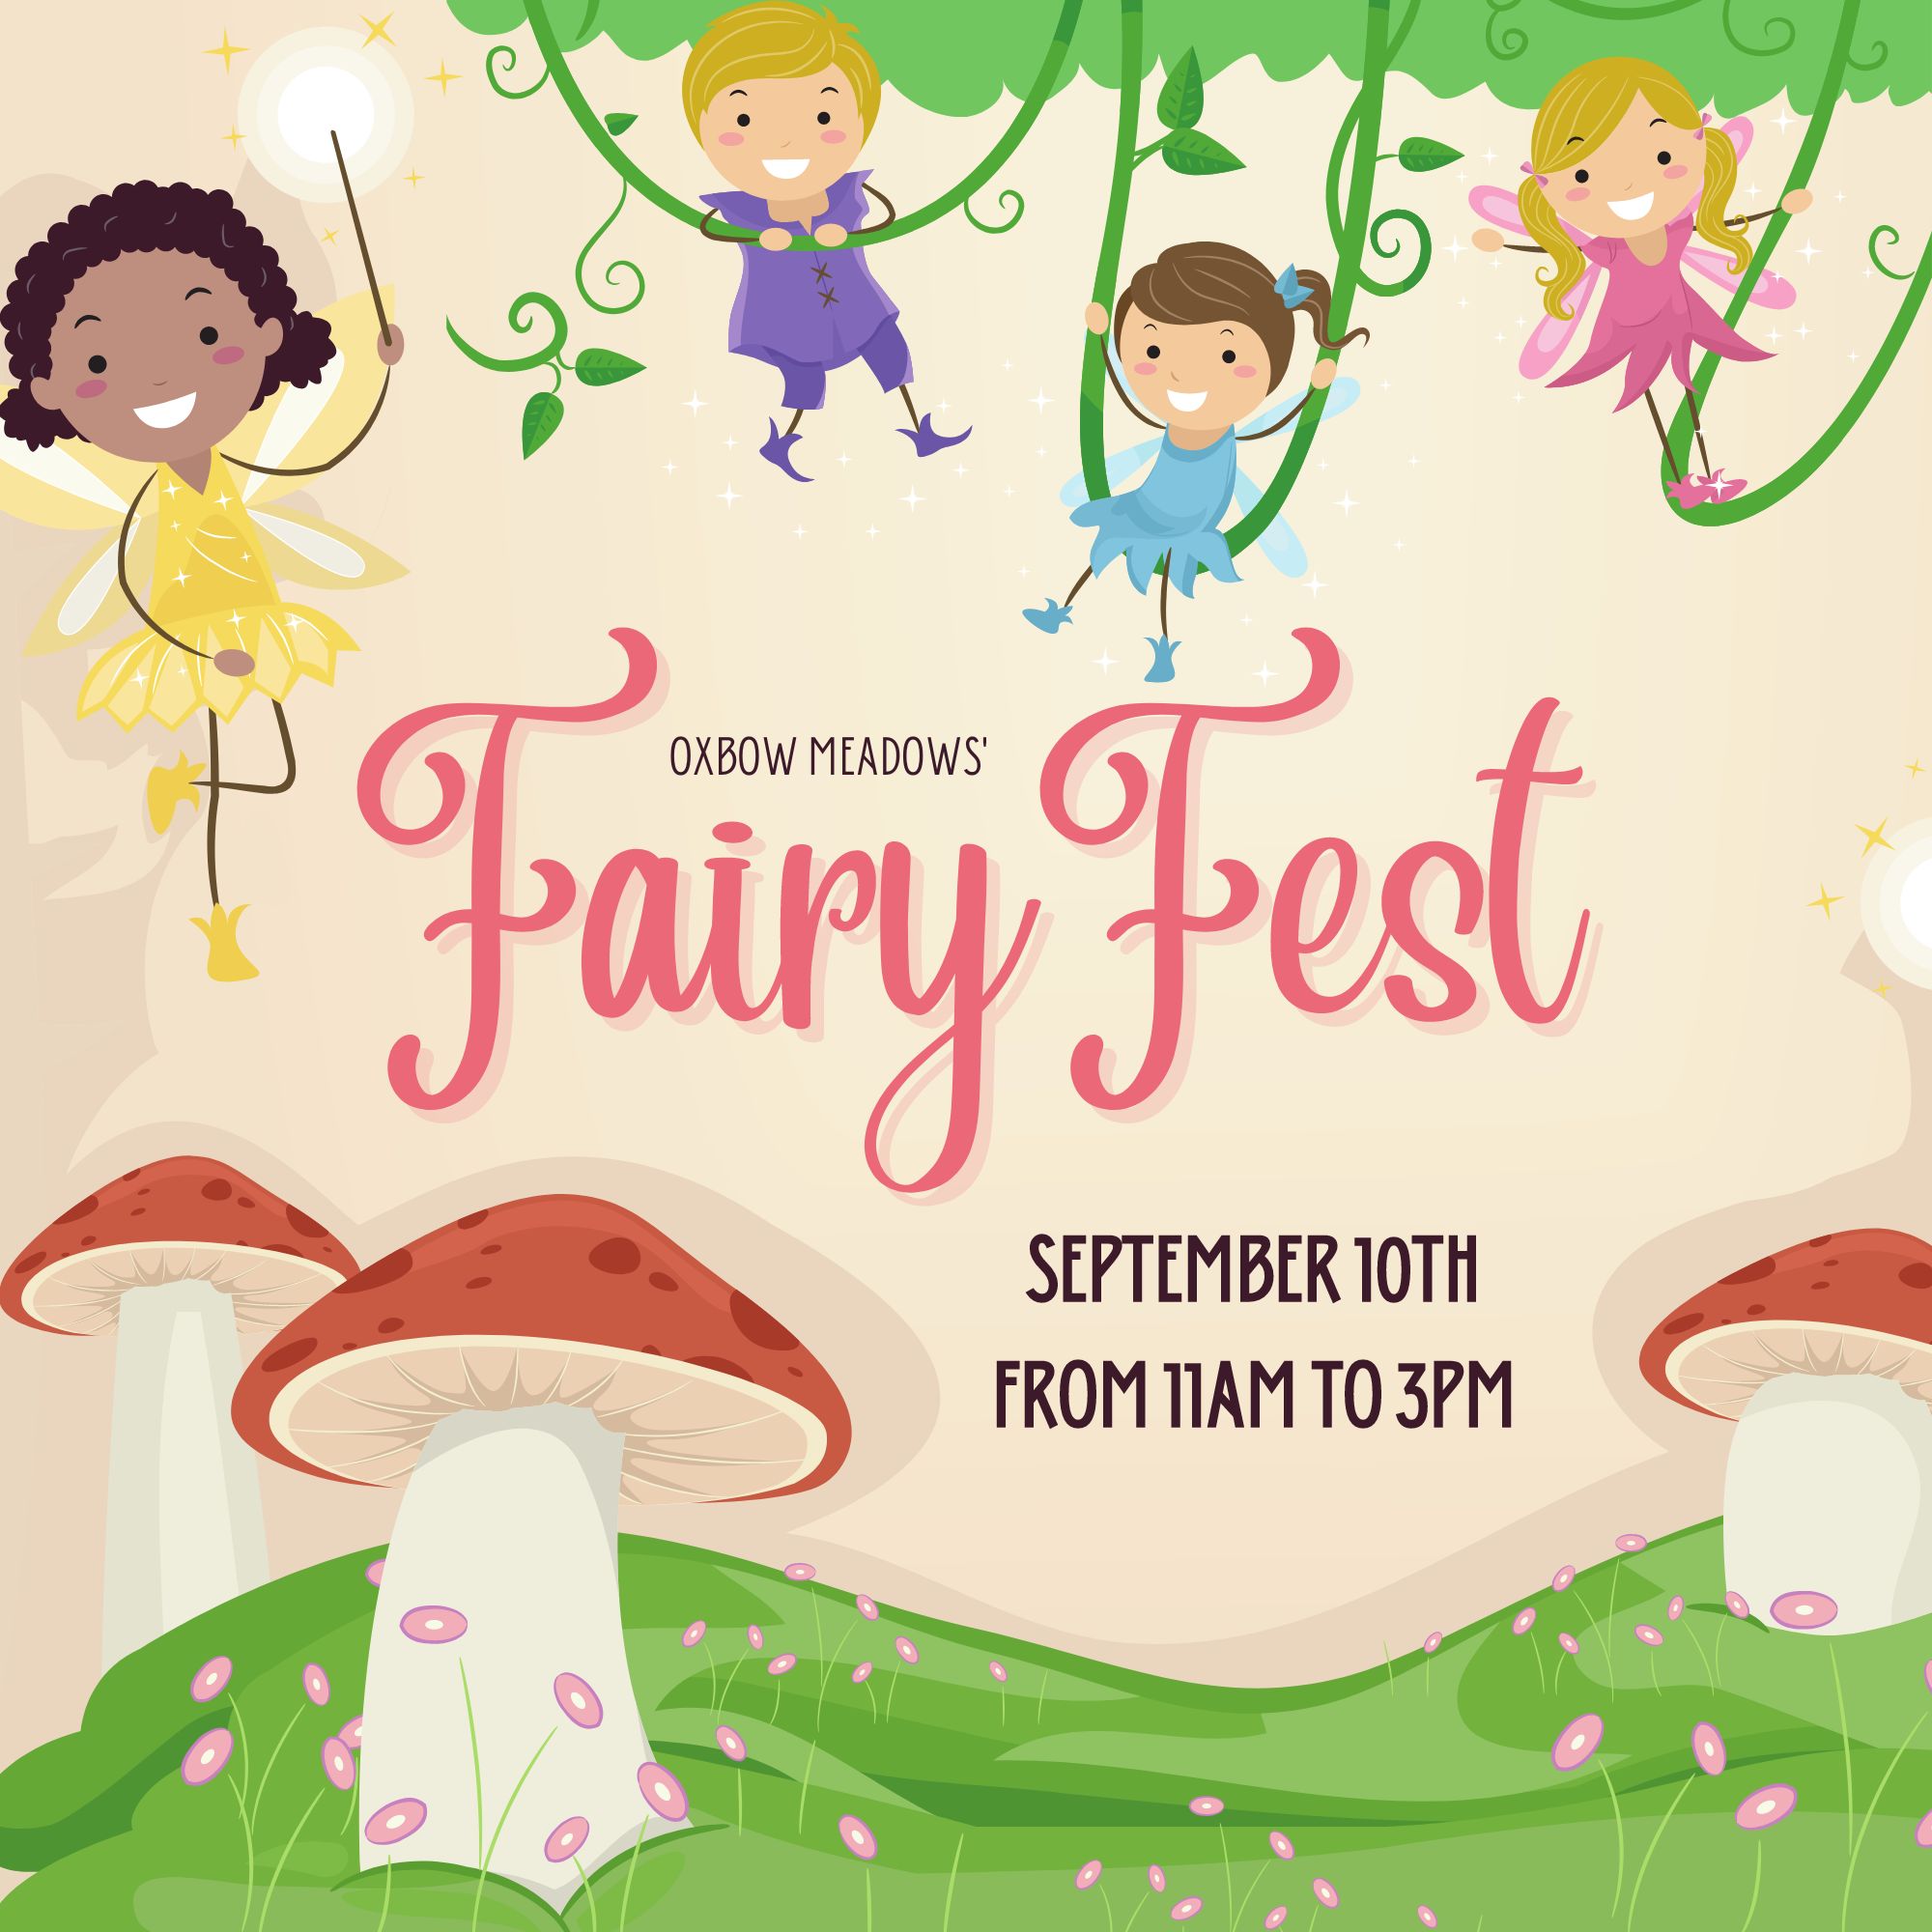 FairyFest